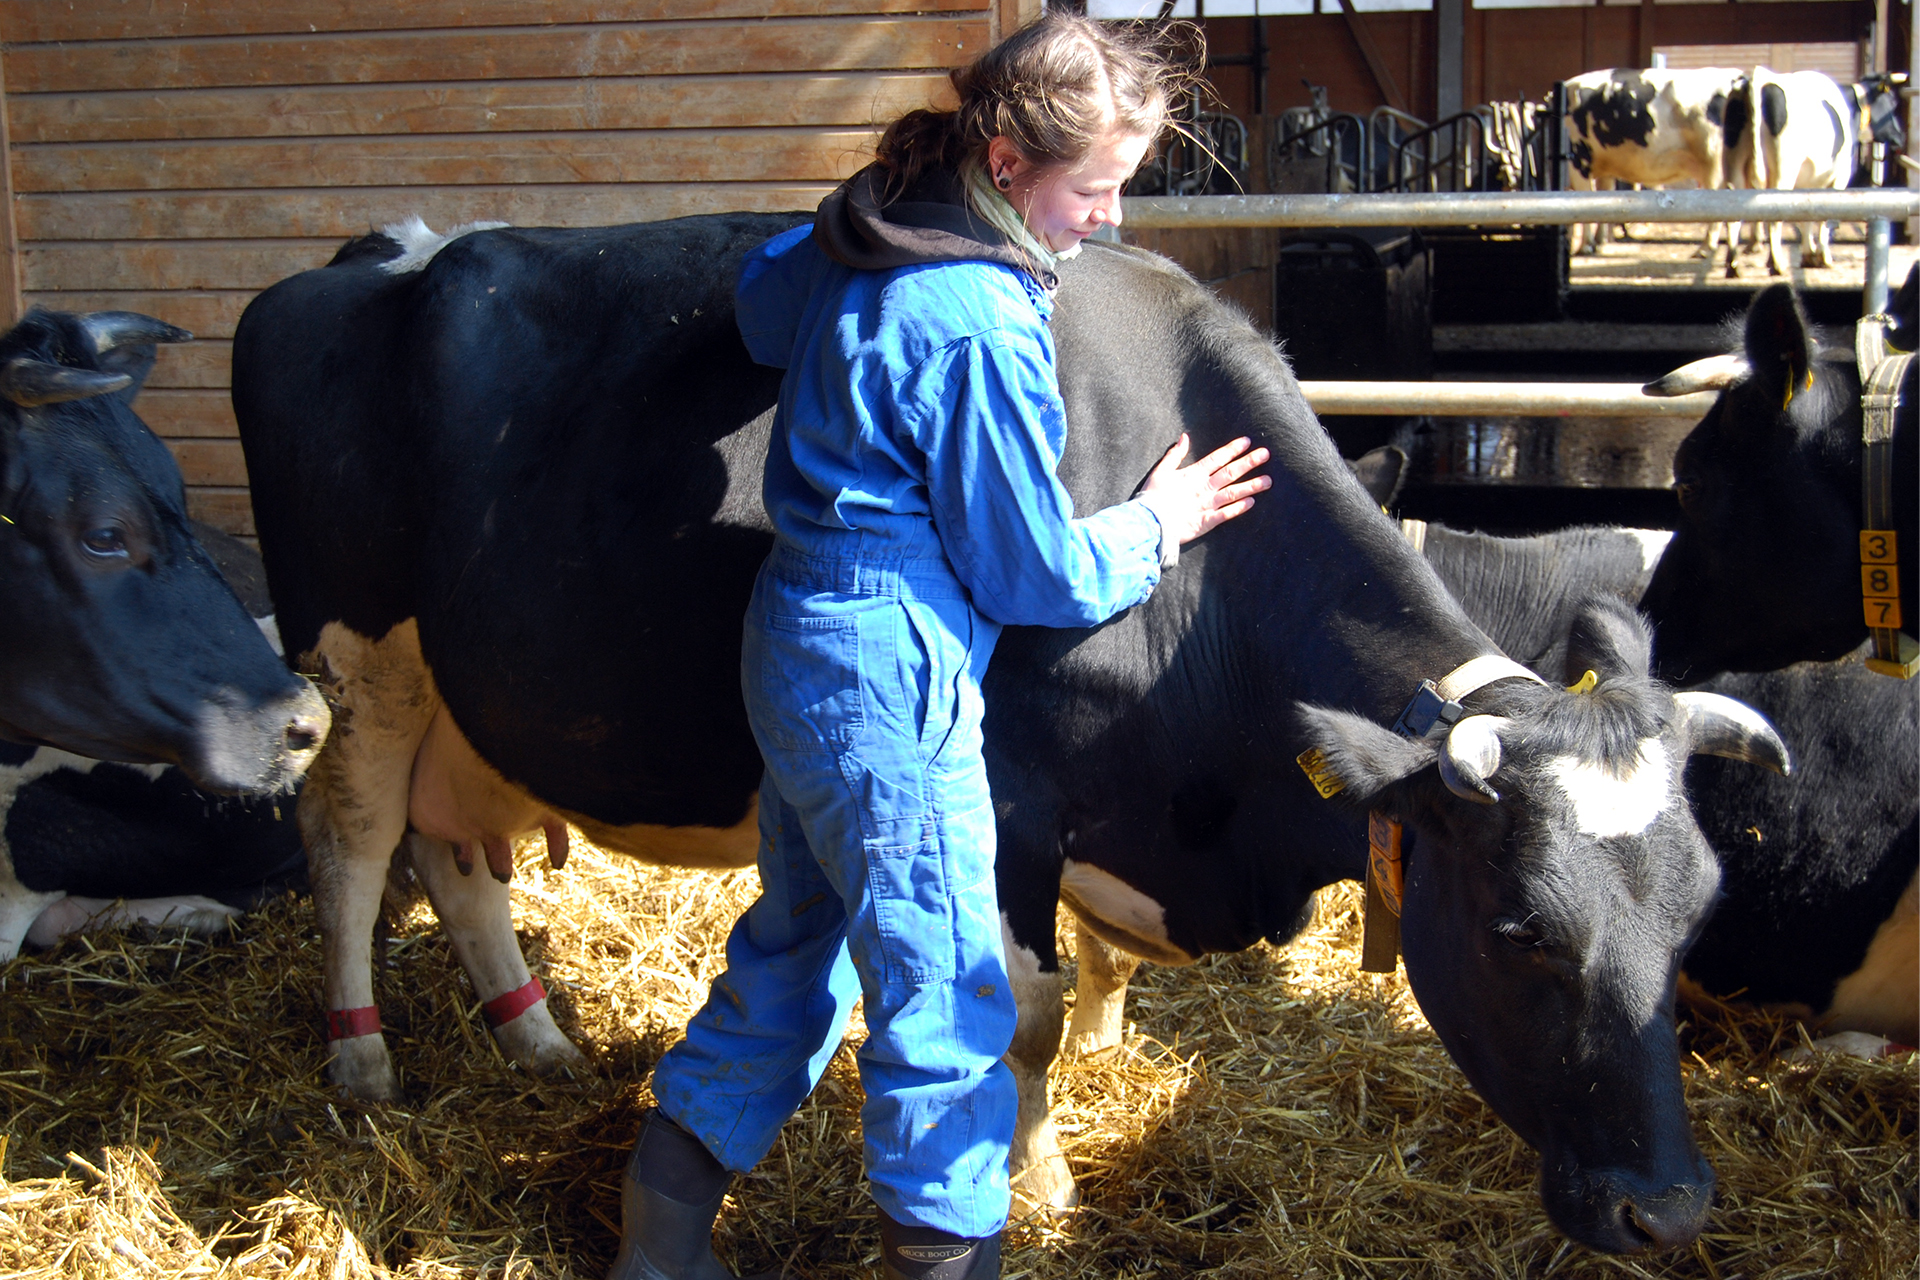 Eutergesundheit, Mensch-Tier-Beziehung und Management in Öko-Milchviehherden